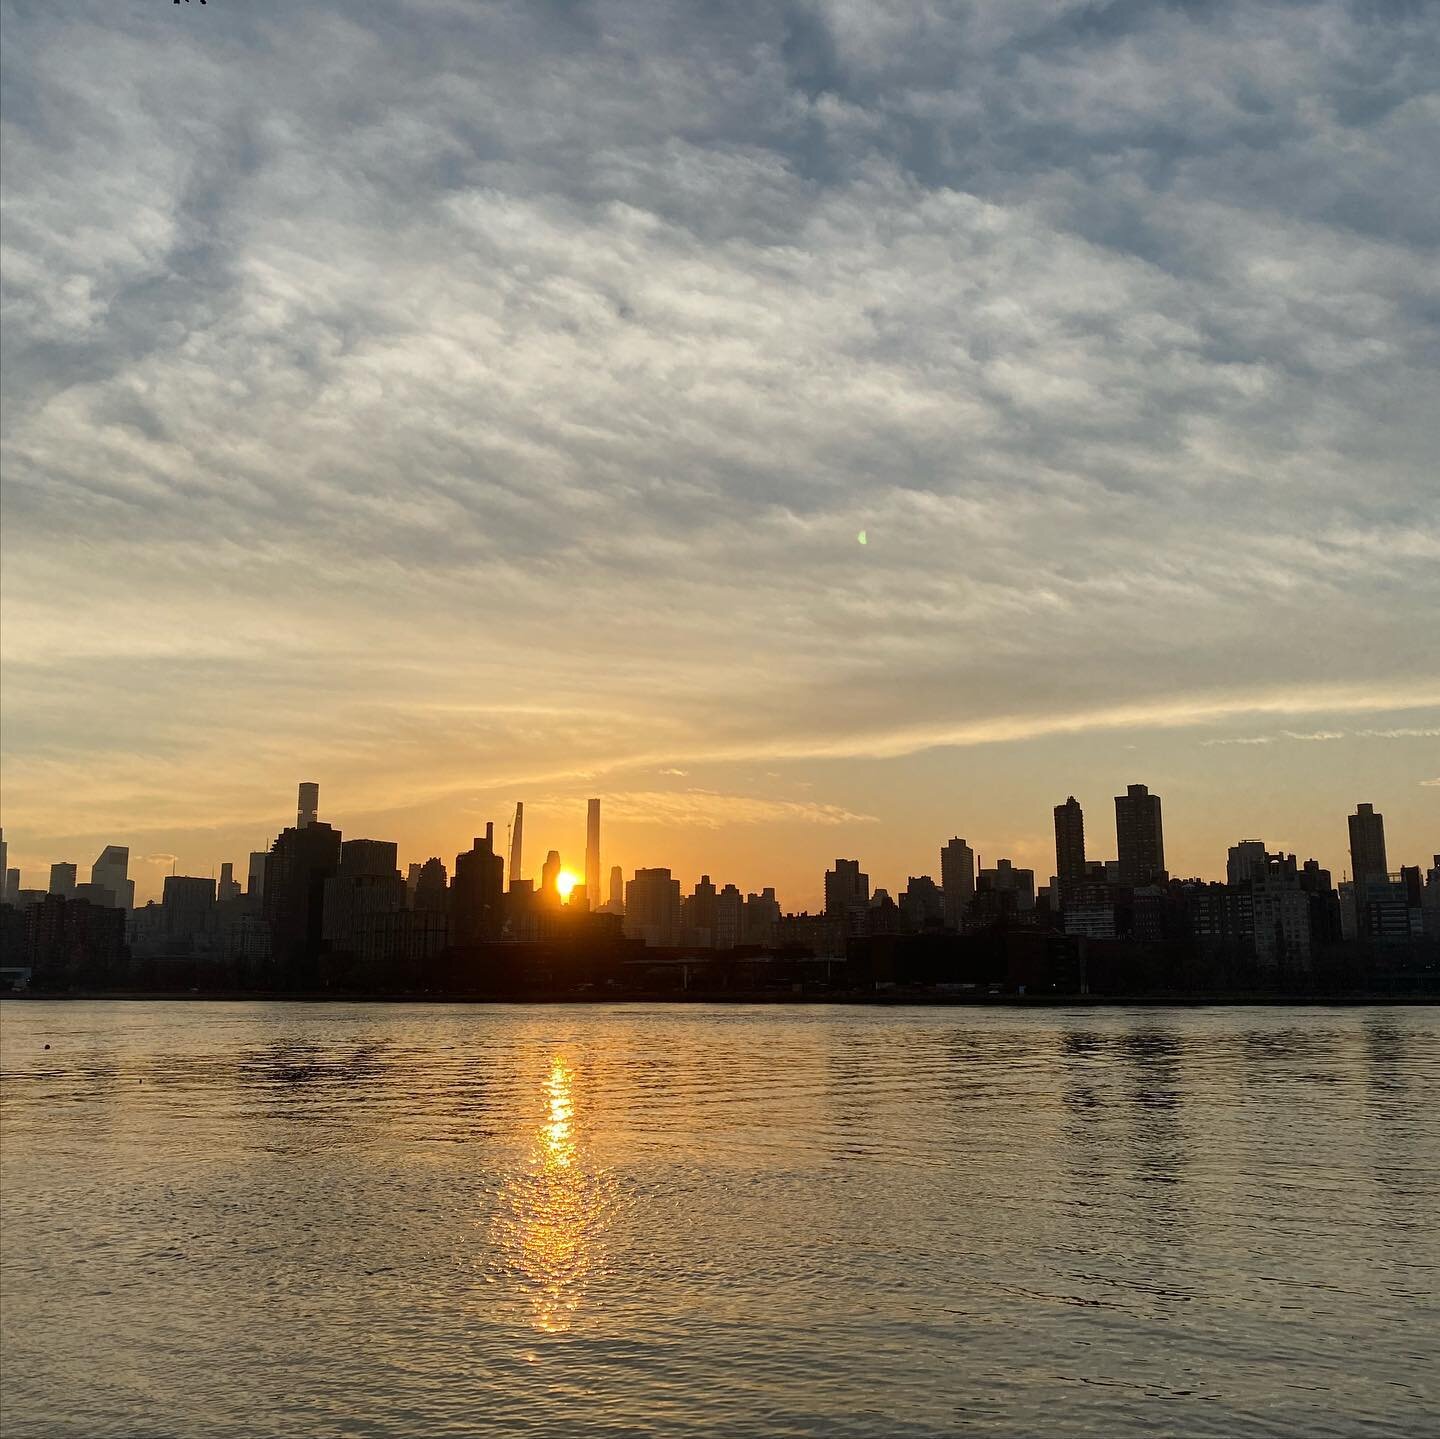 #sunsetoverwater #sunsent #endofday #sunset #sunsetnyc #nycsunsets #sunsetinnyc #nycsunset #rooseveltisland #ignyc #newyorkstreets #nycphotography #newyorknewyork